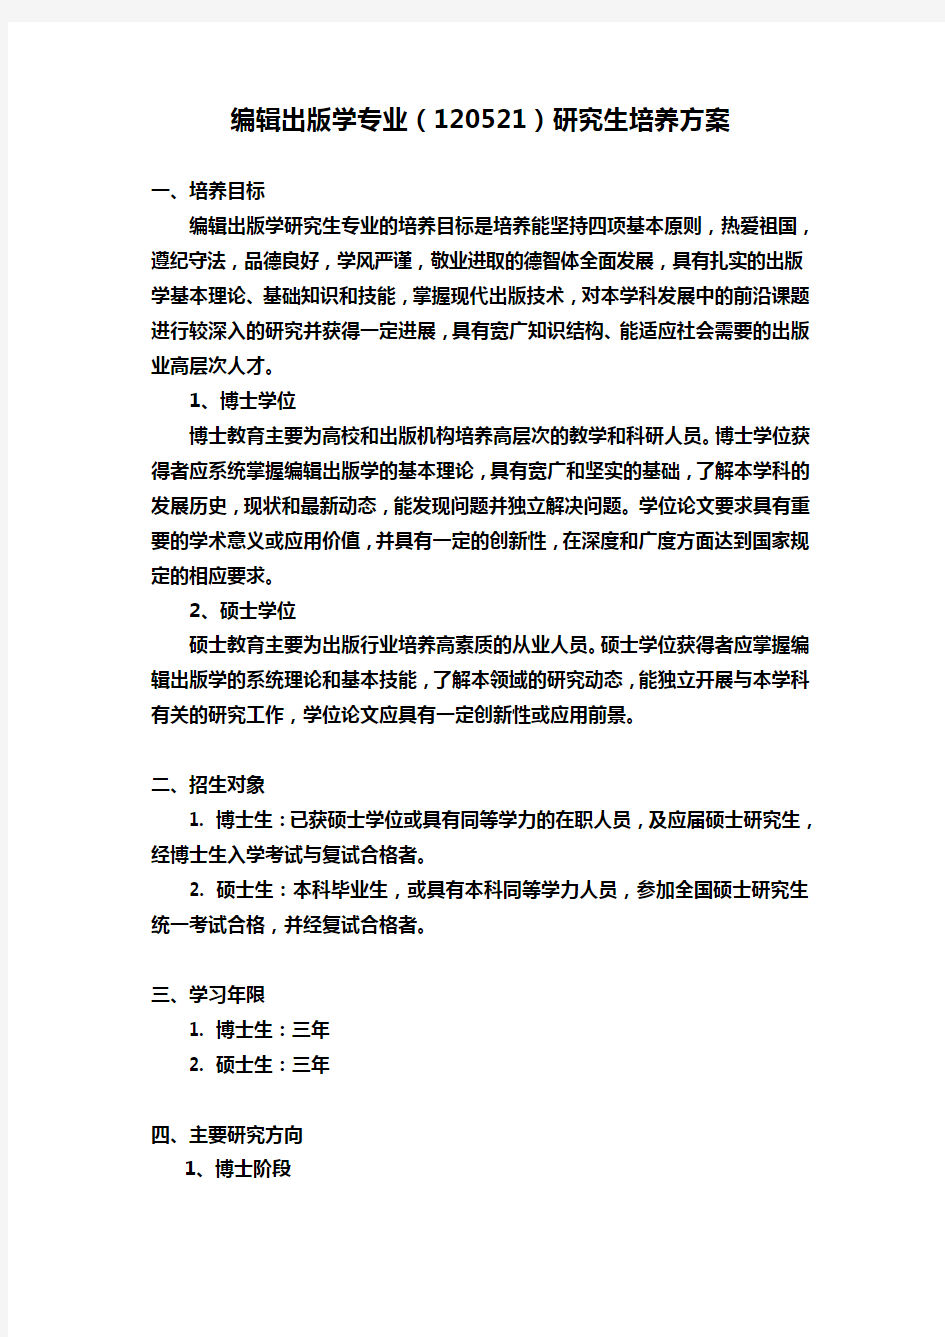 编辑出版学专业(120521)研究生培养方案 - 南京大学研究生院